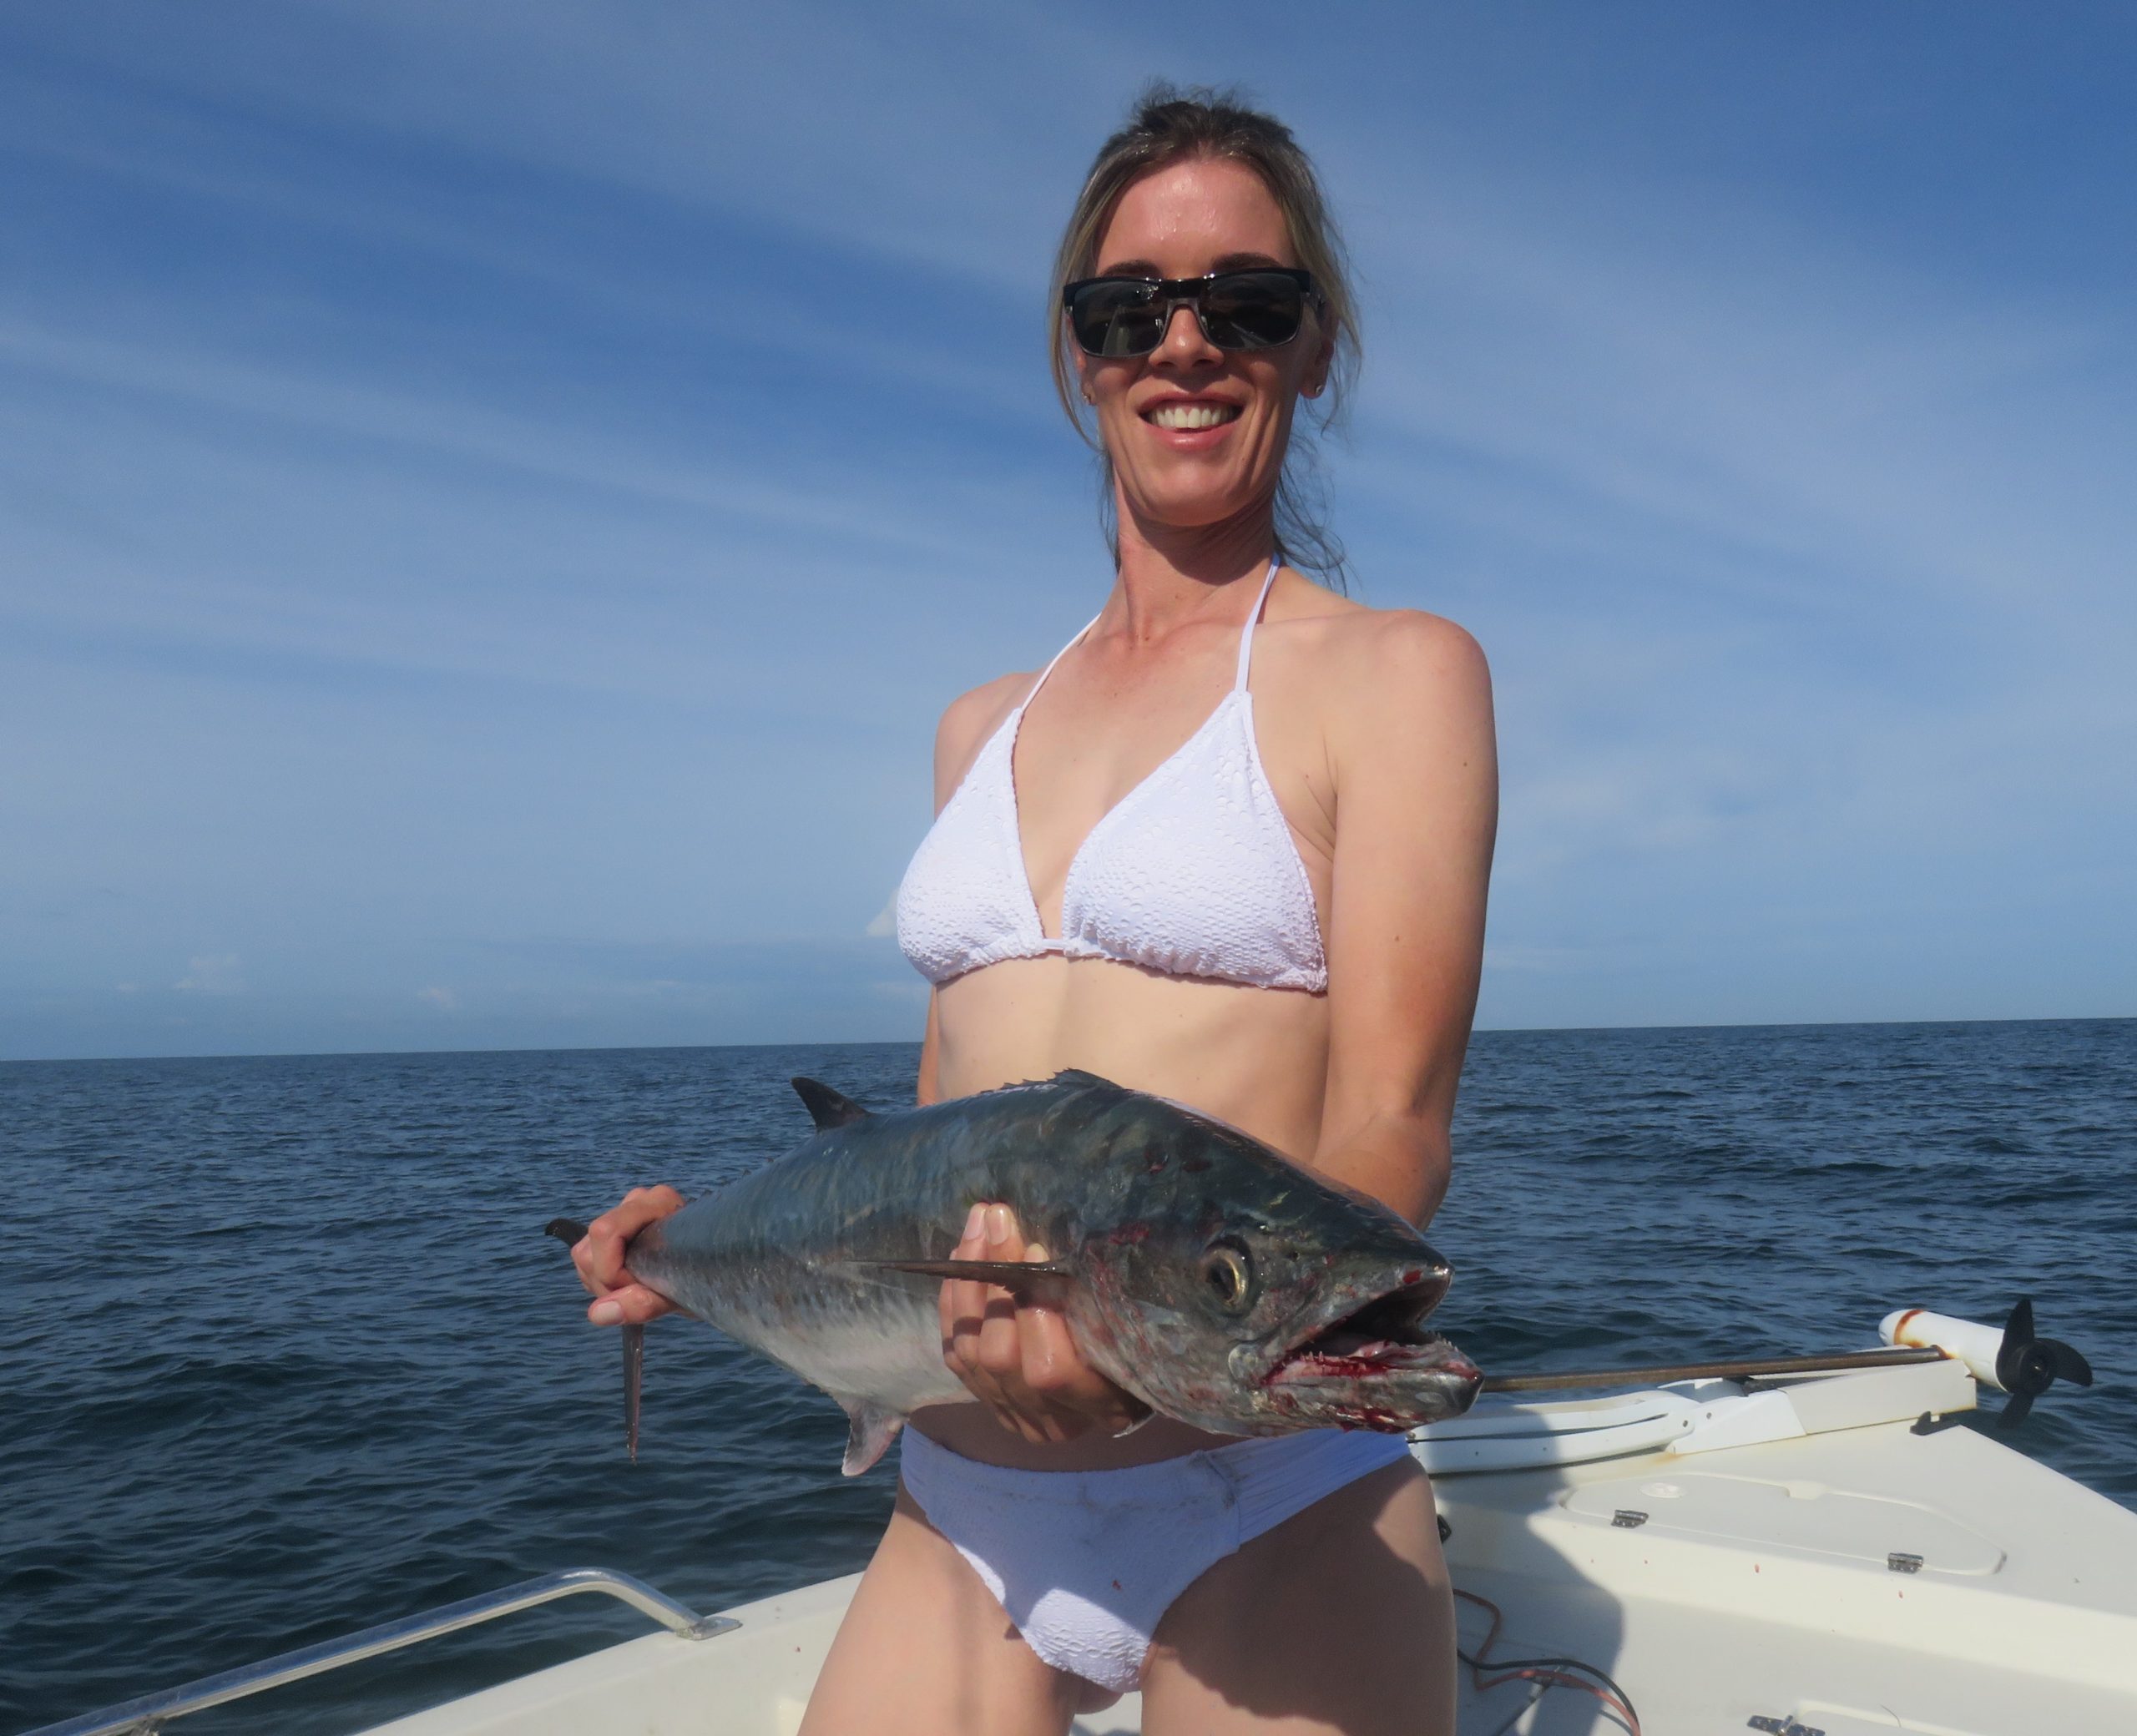 Bikini Fishing in Saltwater – Siesta Key Fishing Charters